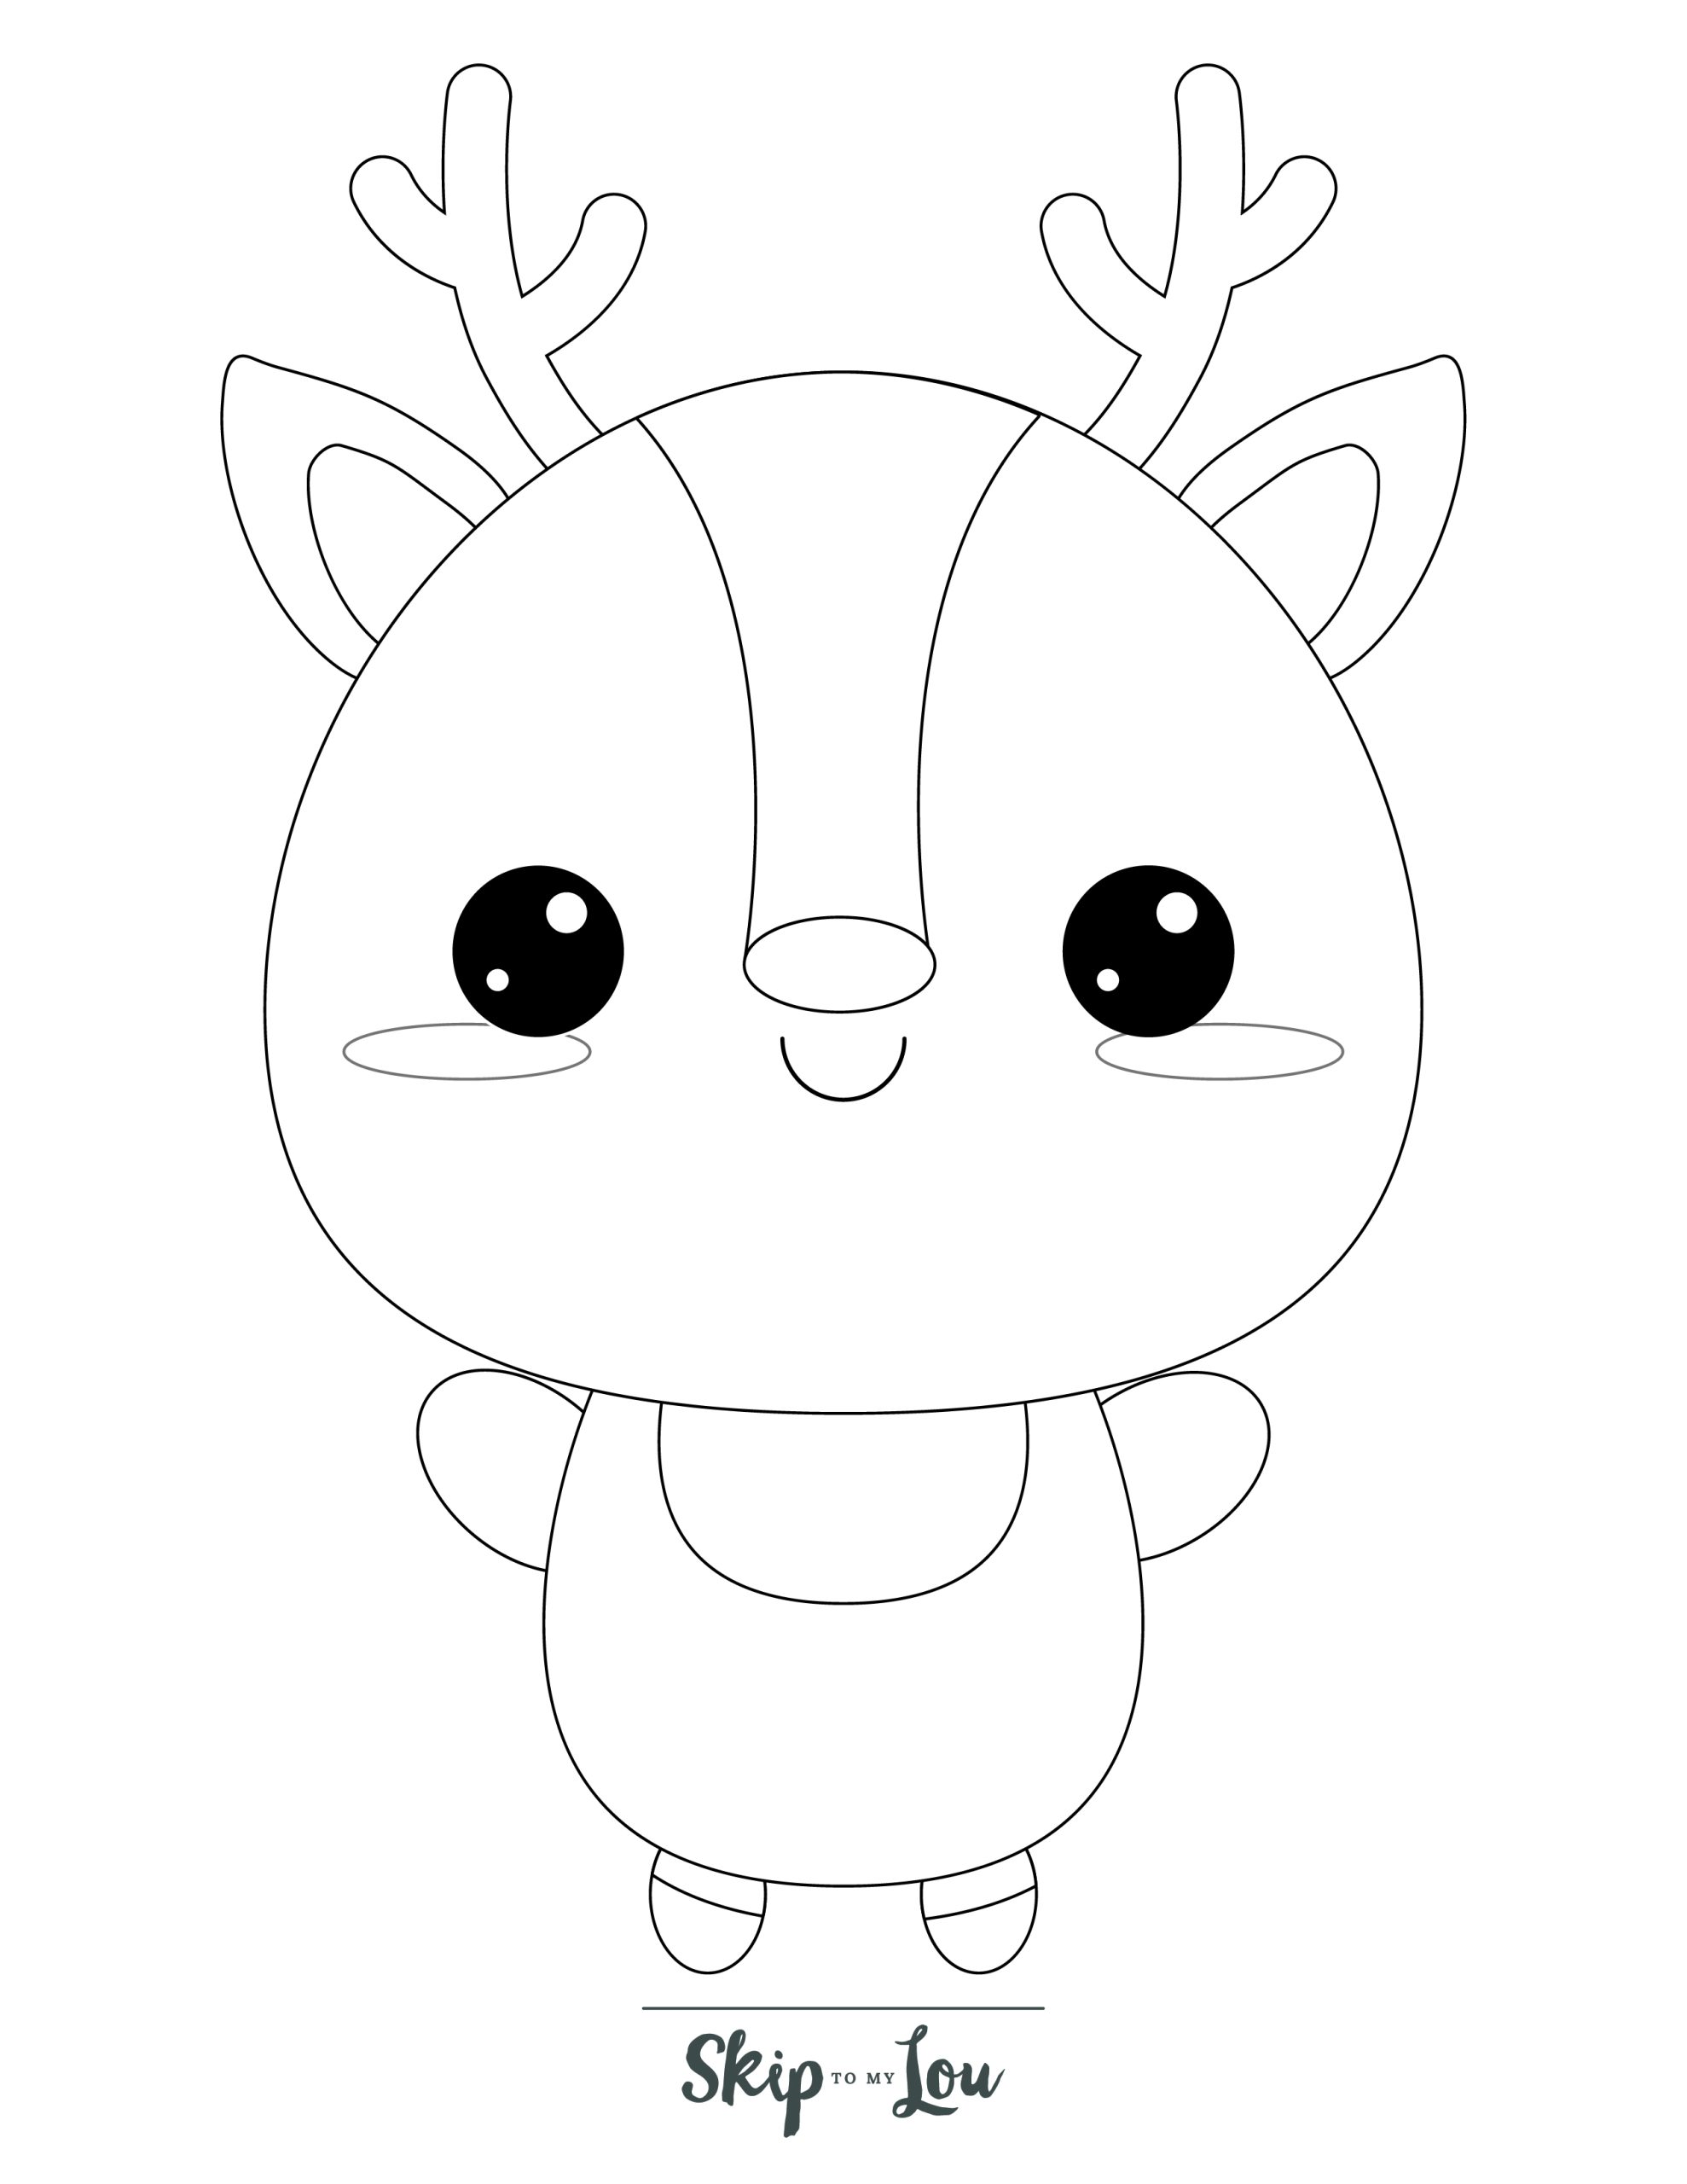 Reindeer Coloring Page 6 - Line drawing of cute baby reindeer 